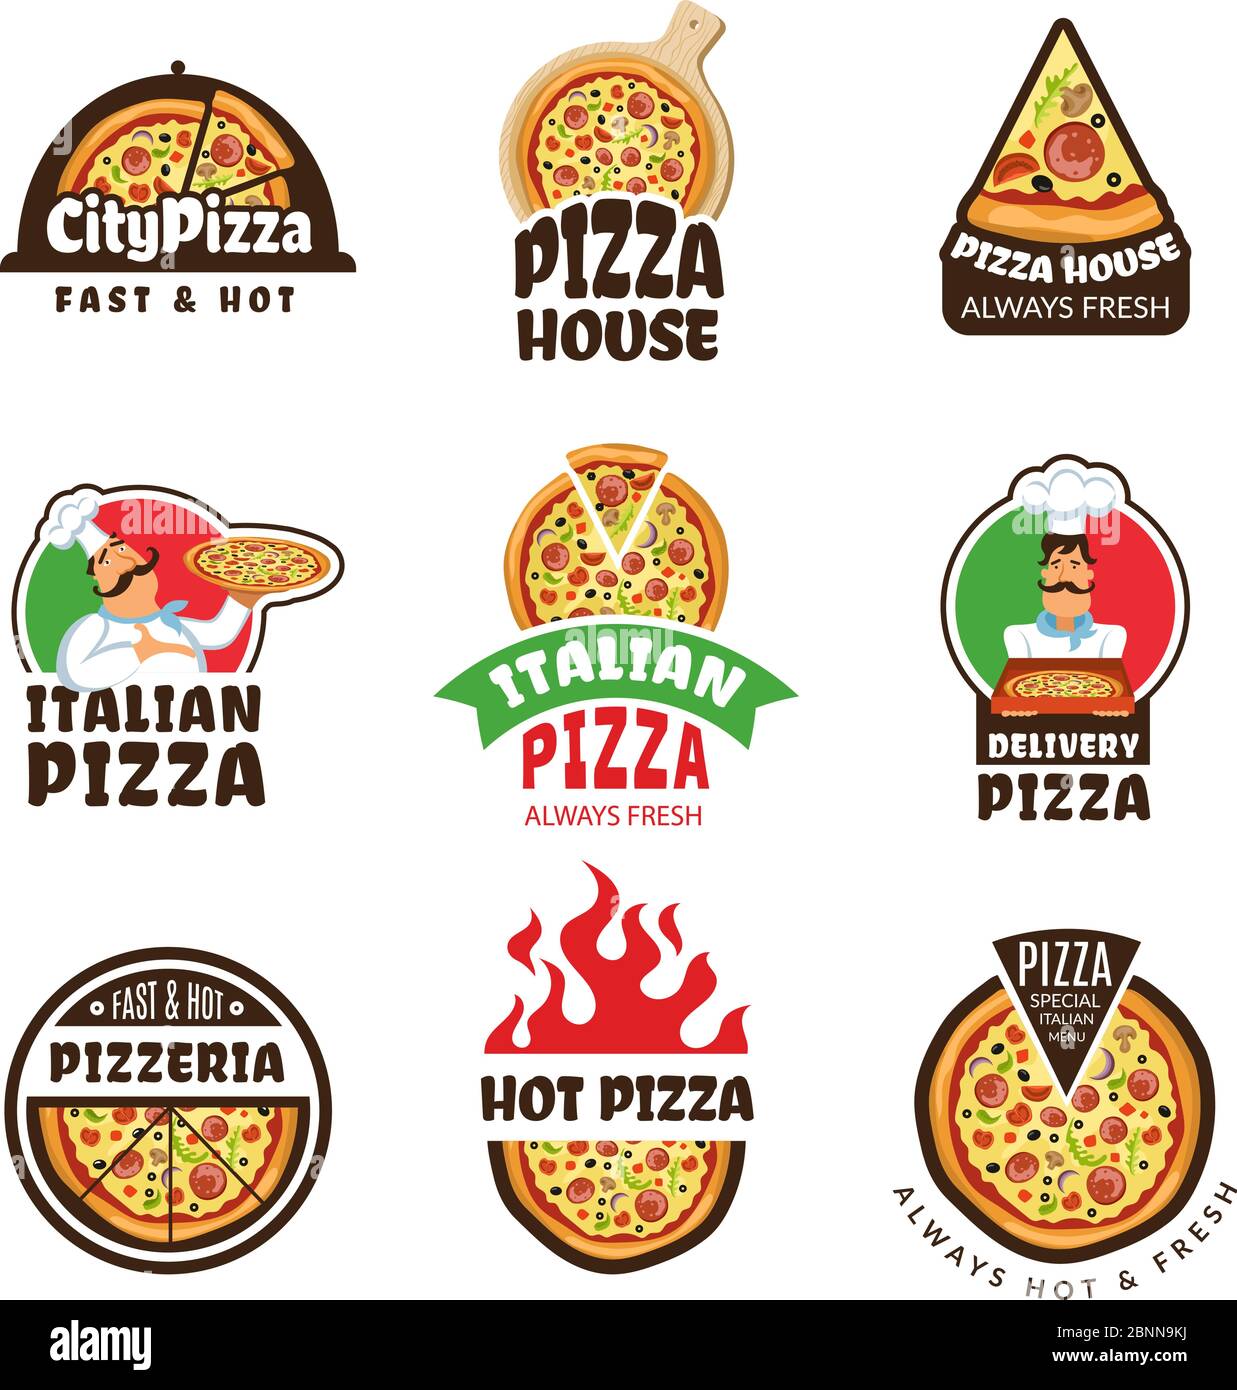 Logo de la pizzeria. Pizza italienne ingrédients restaurant cuisinier trattoria déjeuner étiquettes ou badges vectoriels de couleur Illustration de Vecteur